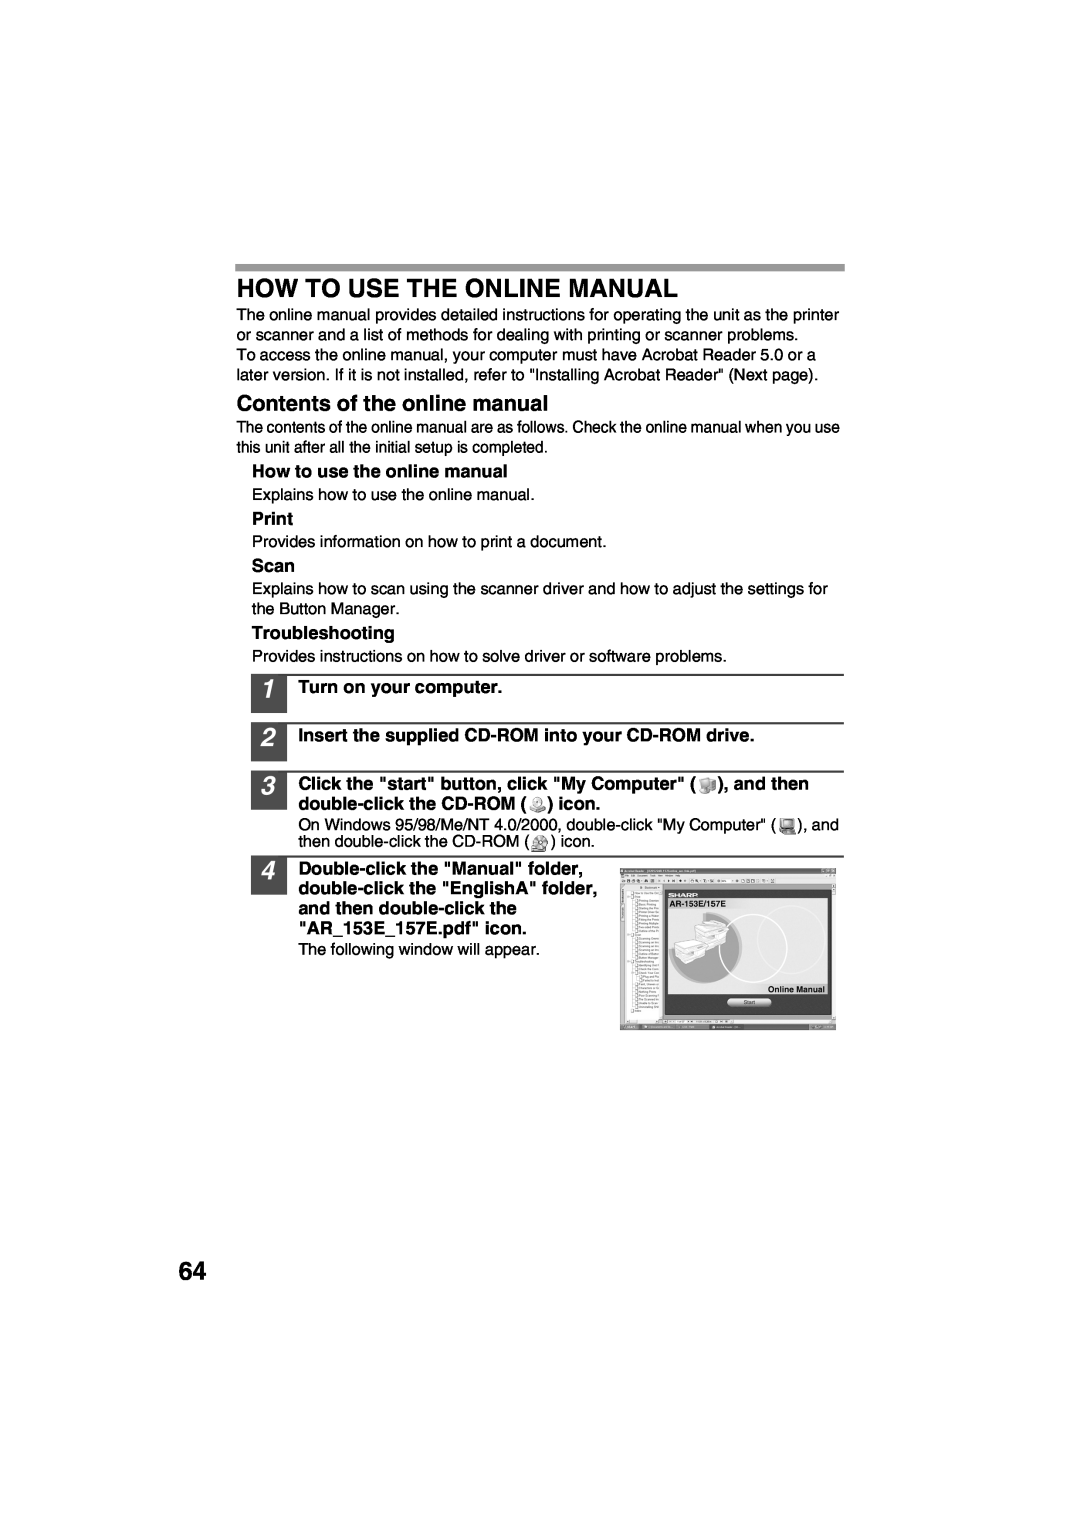 Sharp AR-153E, AR-157E How To Use The Online Manual, How to use the online manual, Print, Scan, Troubleshooting 